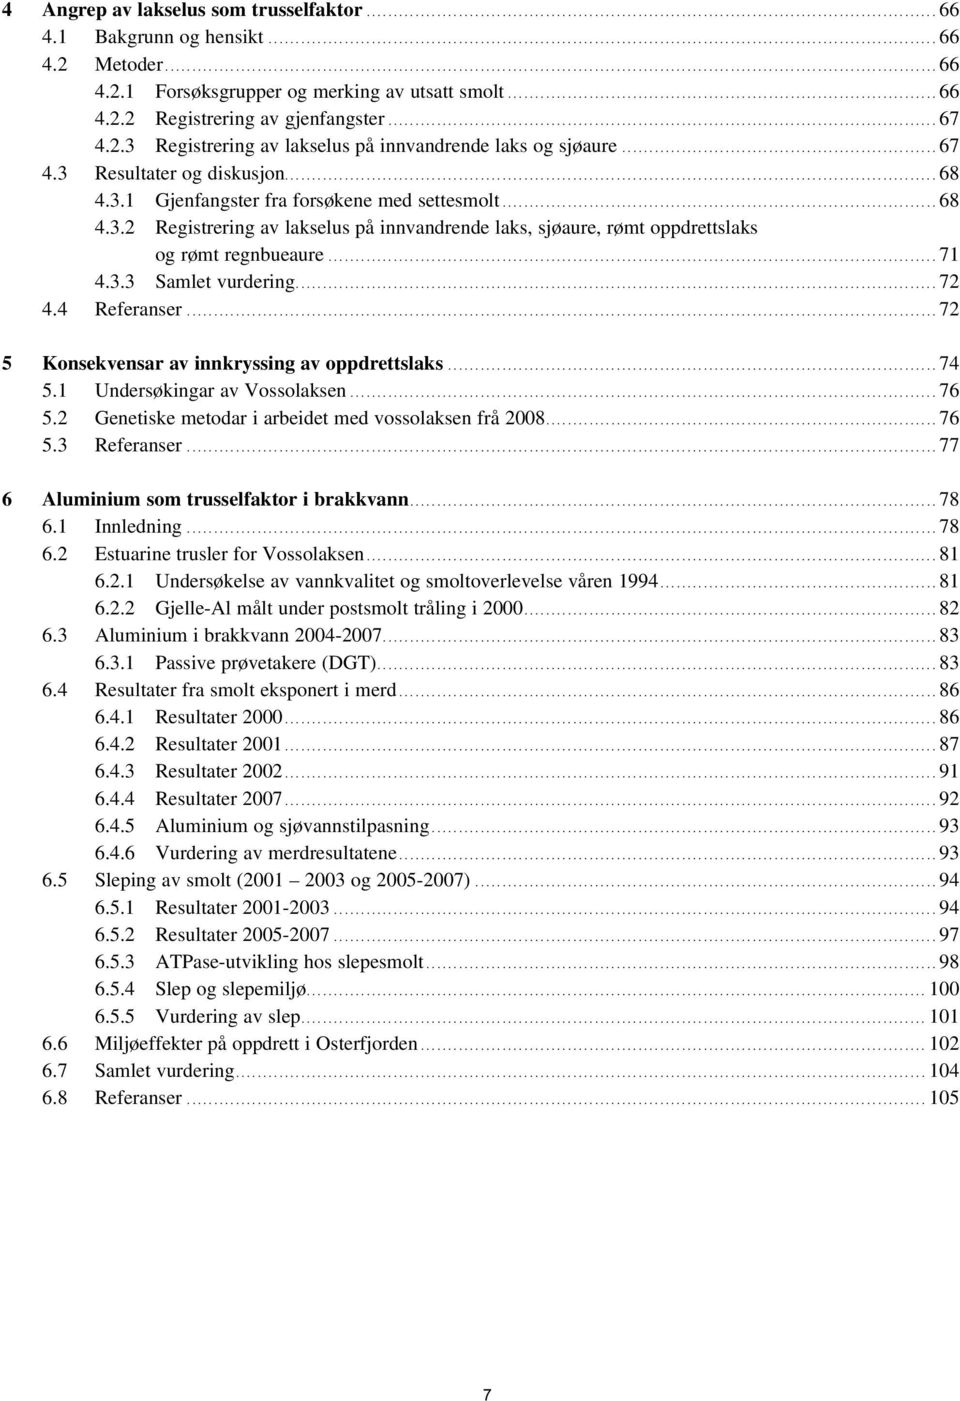 3.3 Samlet vurdering...72 4.4 Referanser...72 5 Konsekvensar av innkryssing av oppdrettslaks...74 5.1 Undersøkingar av Vossolaksen...76 5.2 Genetiske metodar i arbeidet med vossolaksen frå 28...76 5.3 Referanser.